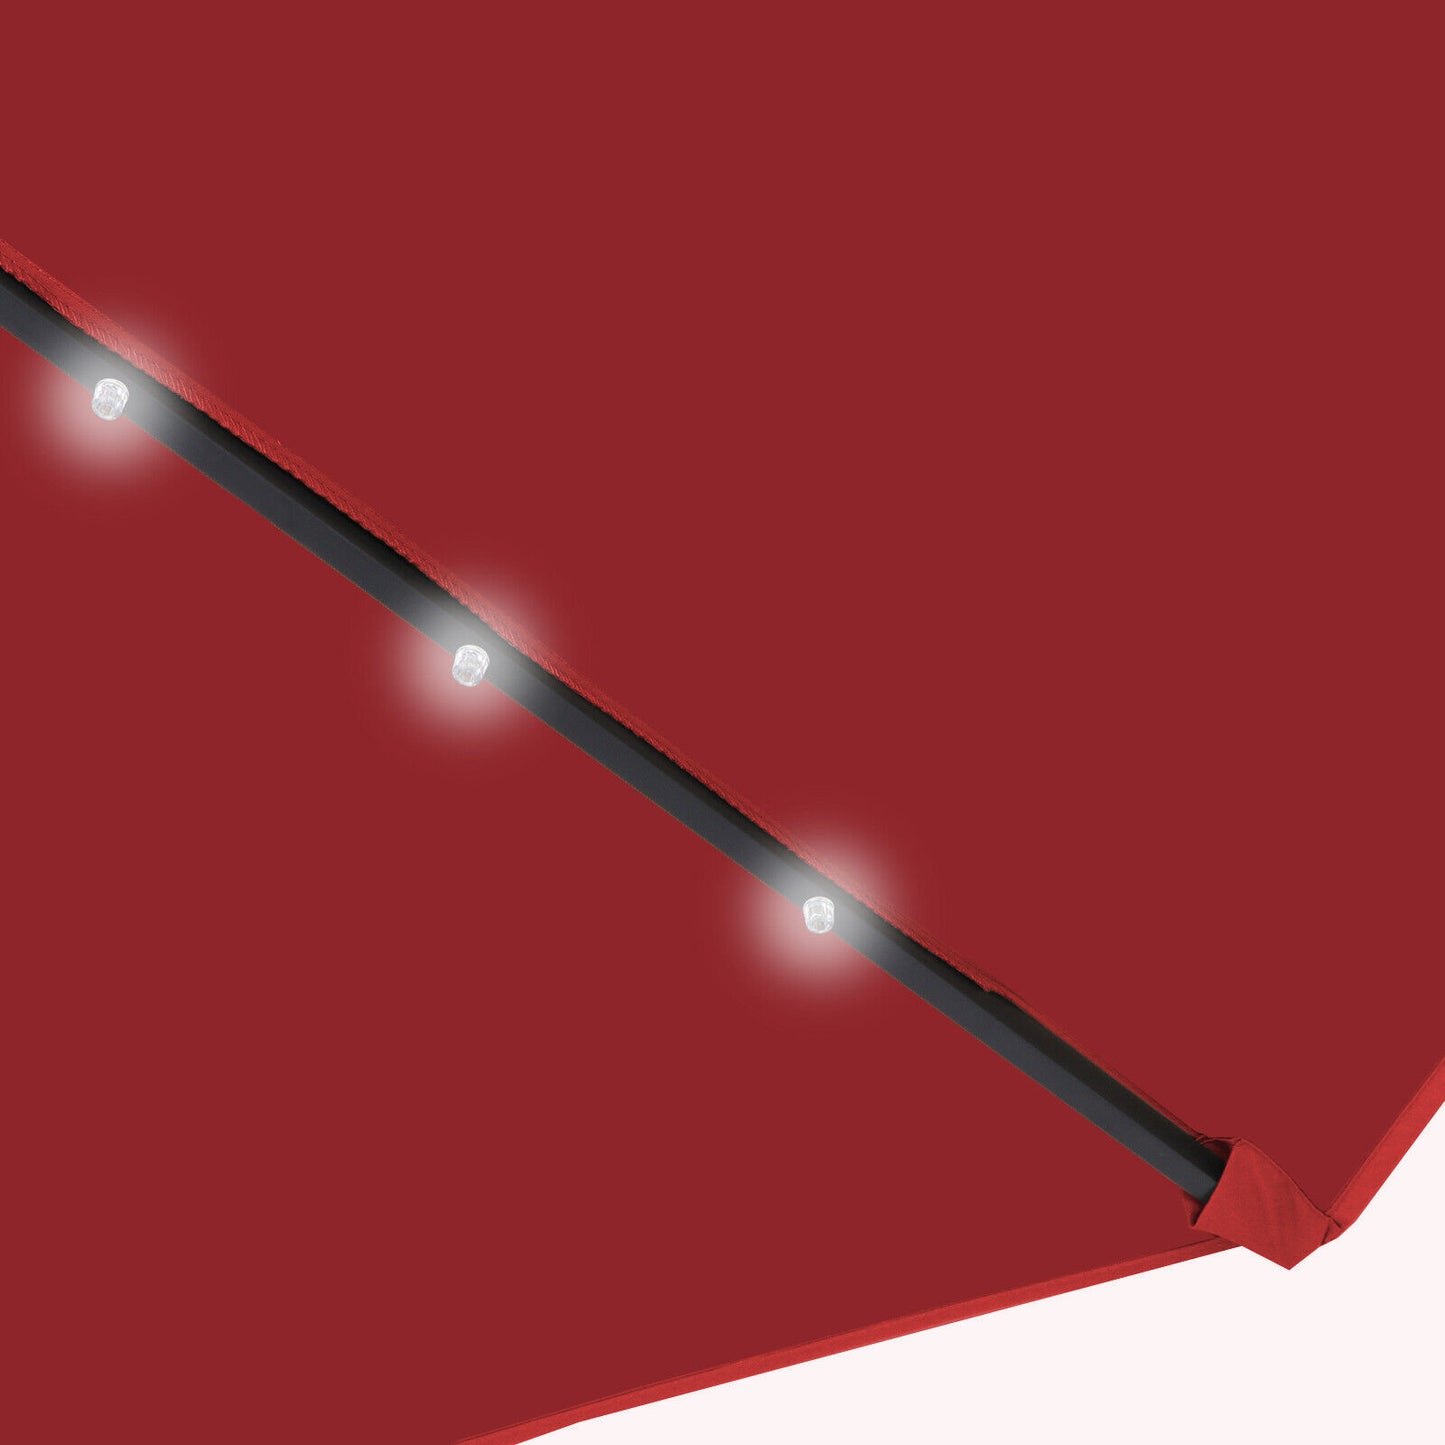 Sunshine Outdoor 10ft Solar Umbrella - 32 LED Light Aluminium Red Tilt Cover